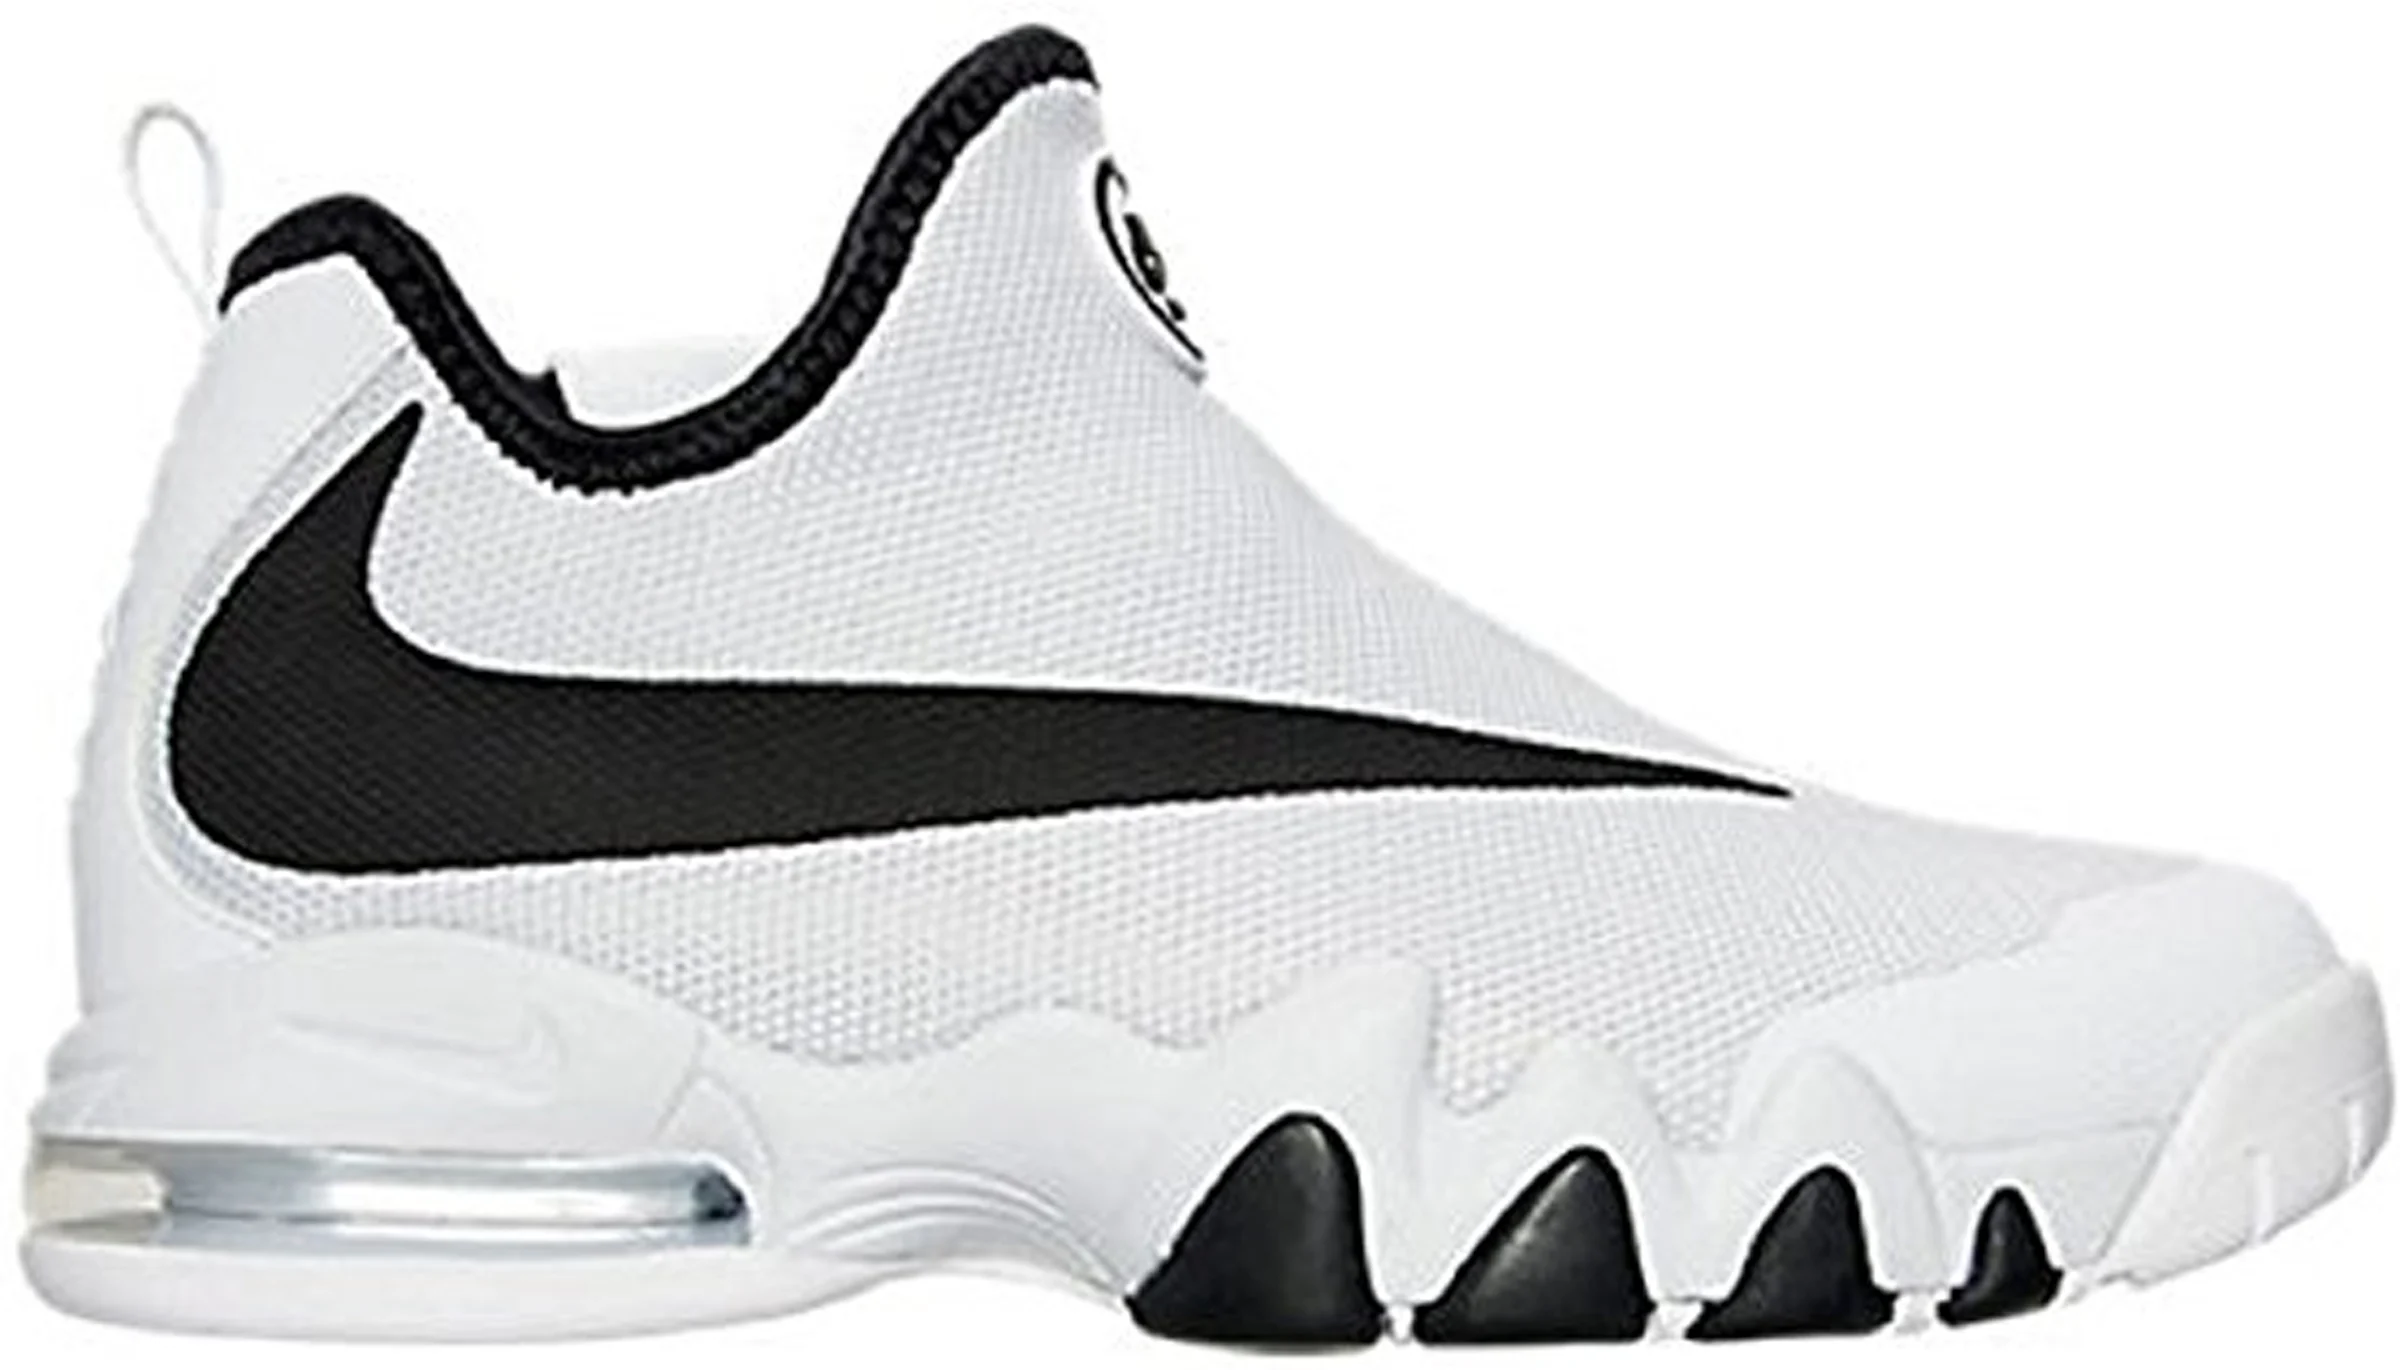 Nike Big Swoosh White Black メンズ - 832759-100 - JP